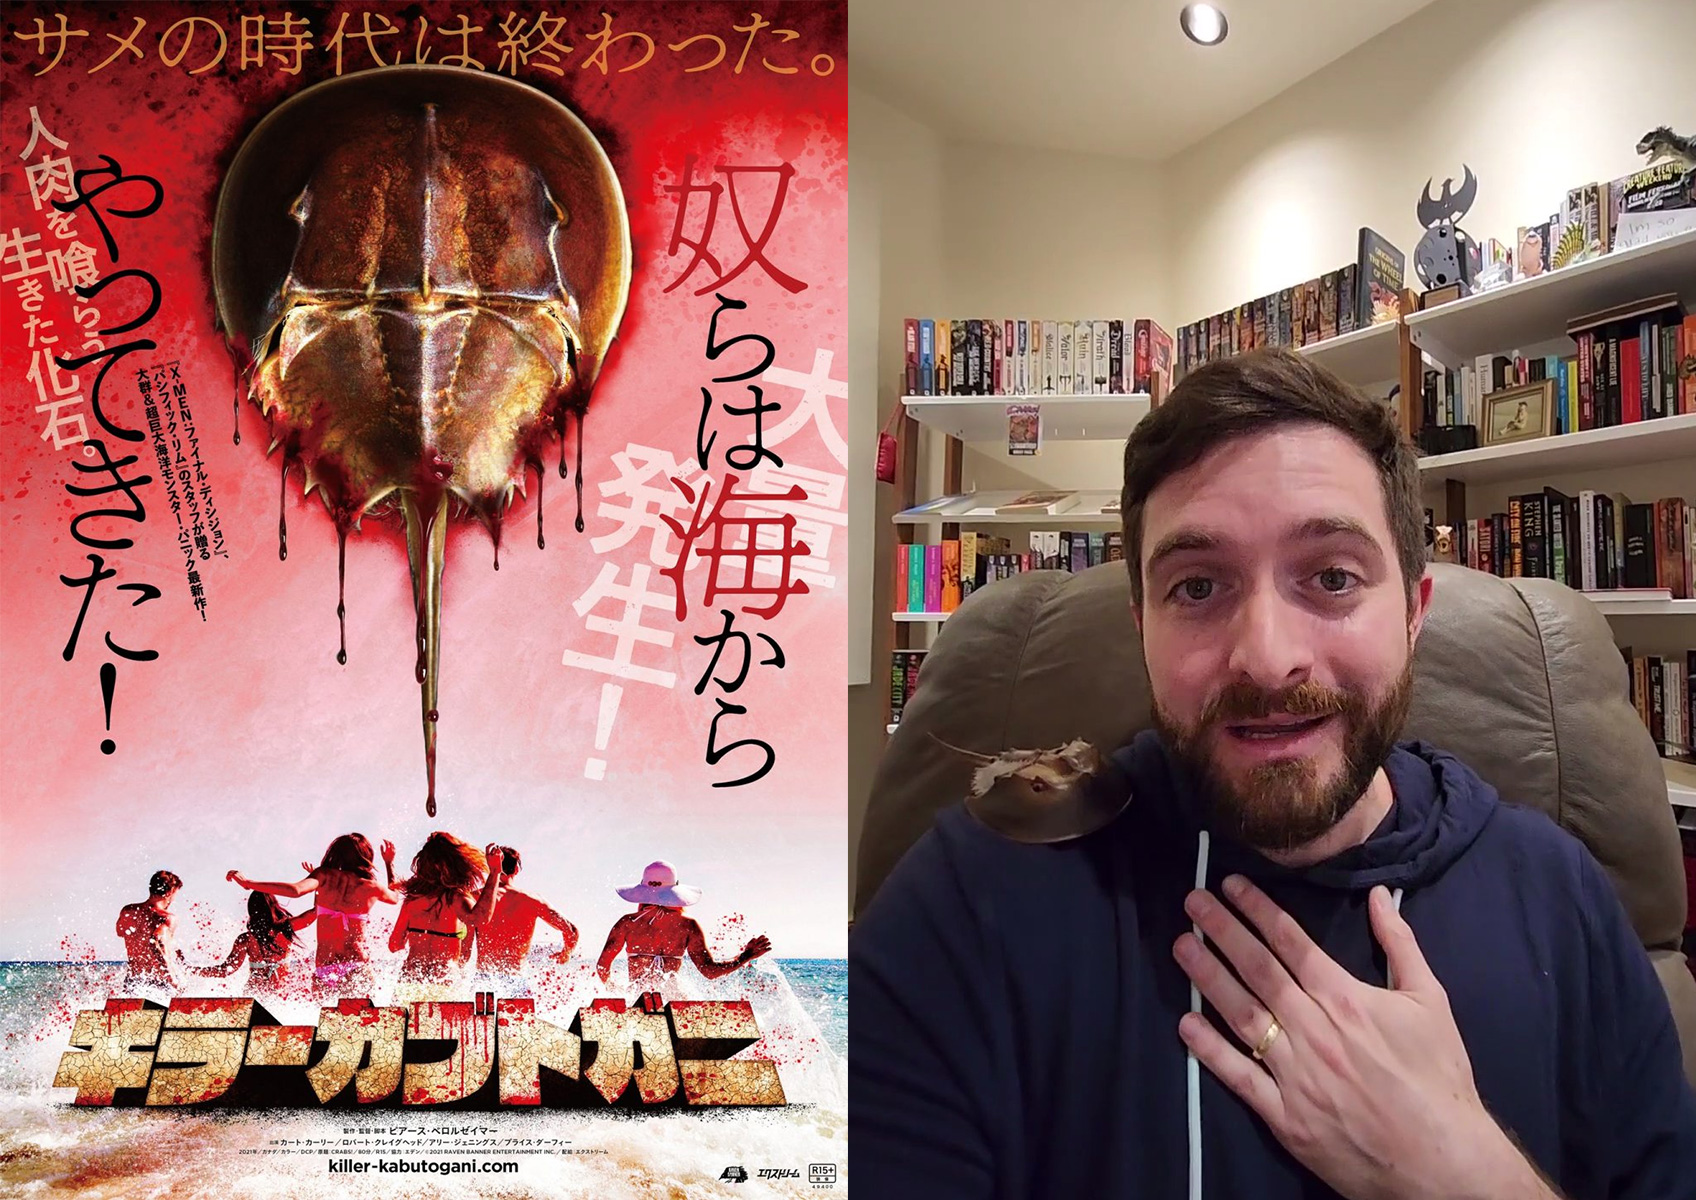 【インタビュー】ホラー映画『キラーカブトガニ』の監督が語る“カブトガニ”と“日本の怪獣映画”への思い入れ – ホラー通信